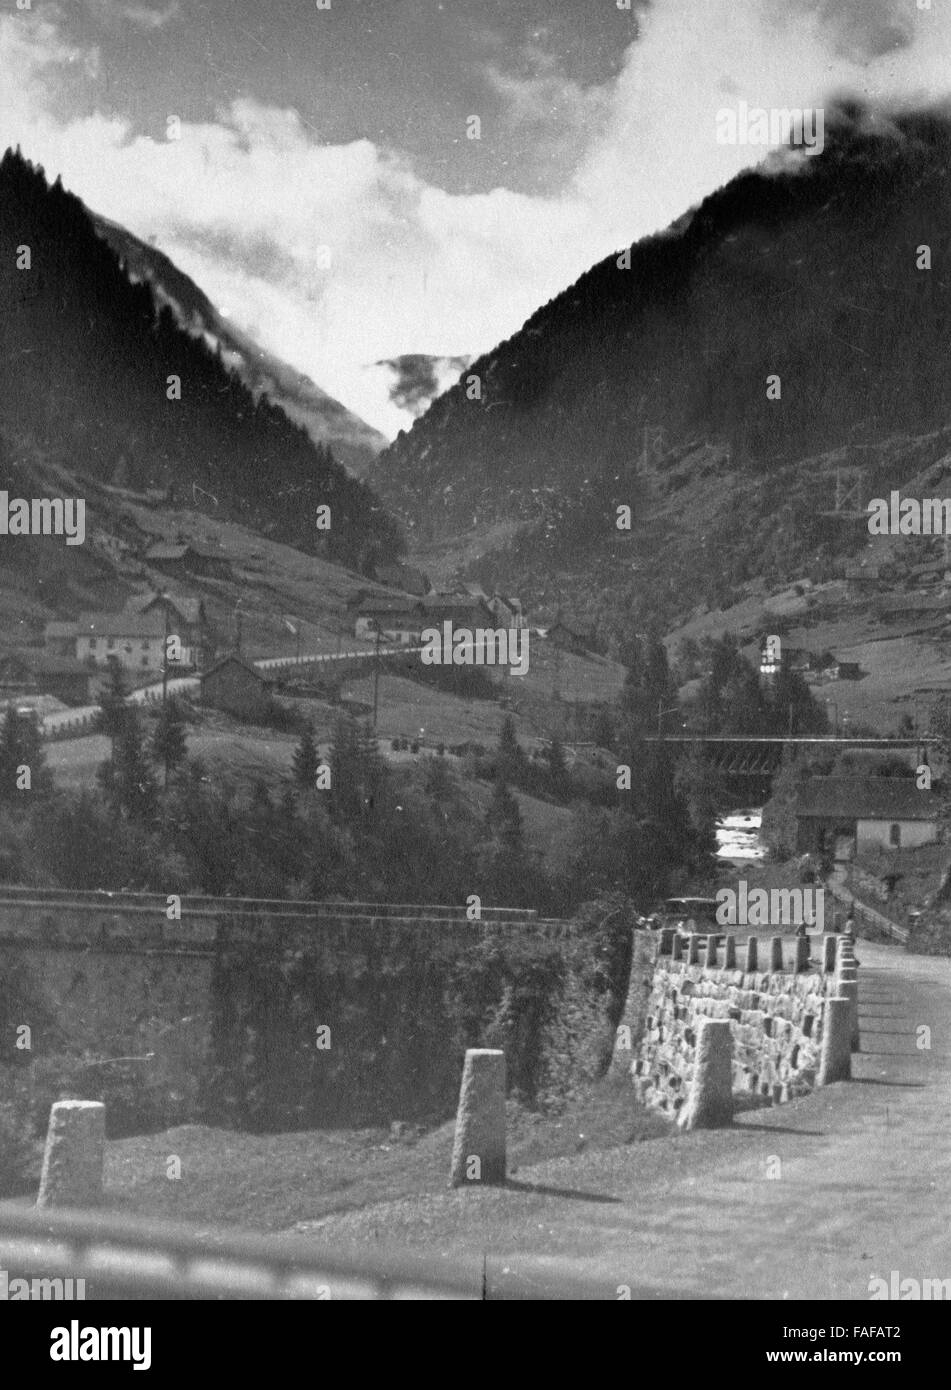 Malerisches Reusstal zwischen den Kantonen Uri und Wallis, Schweiz 1930er Jahre. Scenic valley of river Reuss between the cantons Uri and Wallis, Switzerland 1930s. Stock Photo